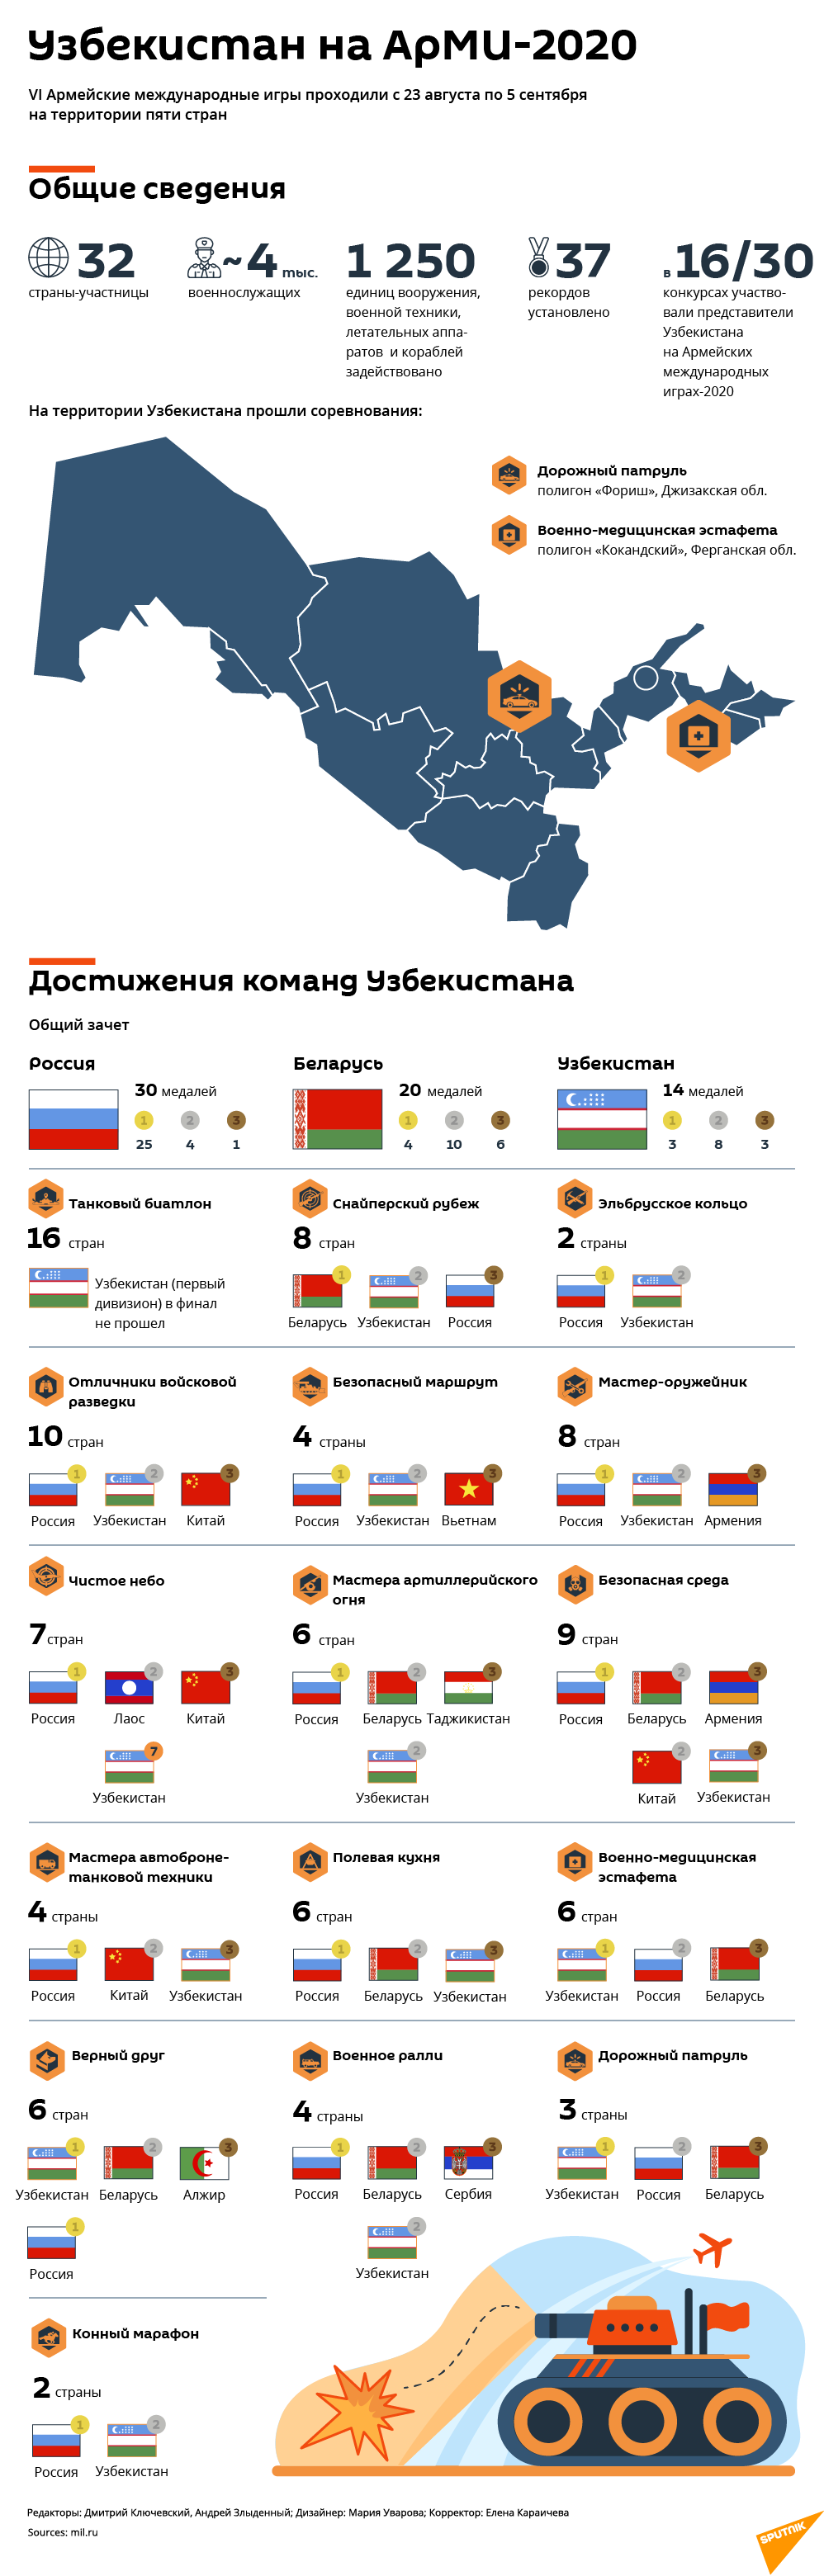 Итоги АрМИ-2020 - Sputnik Узбекистан